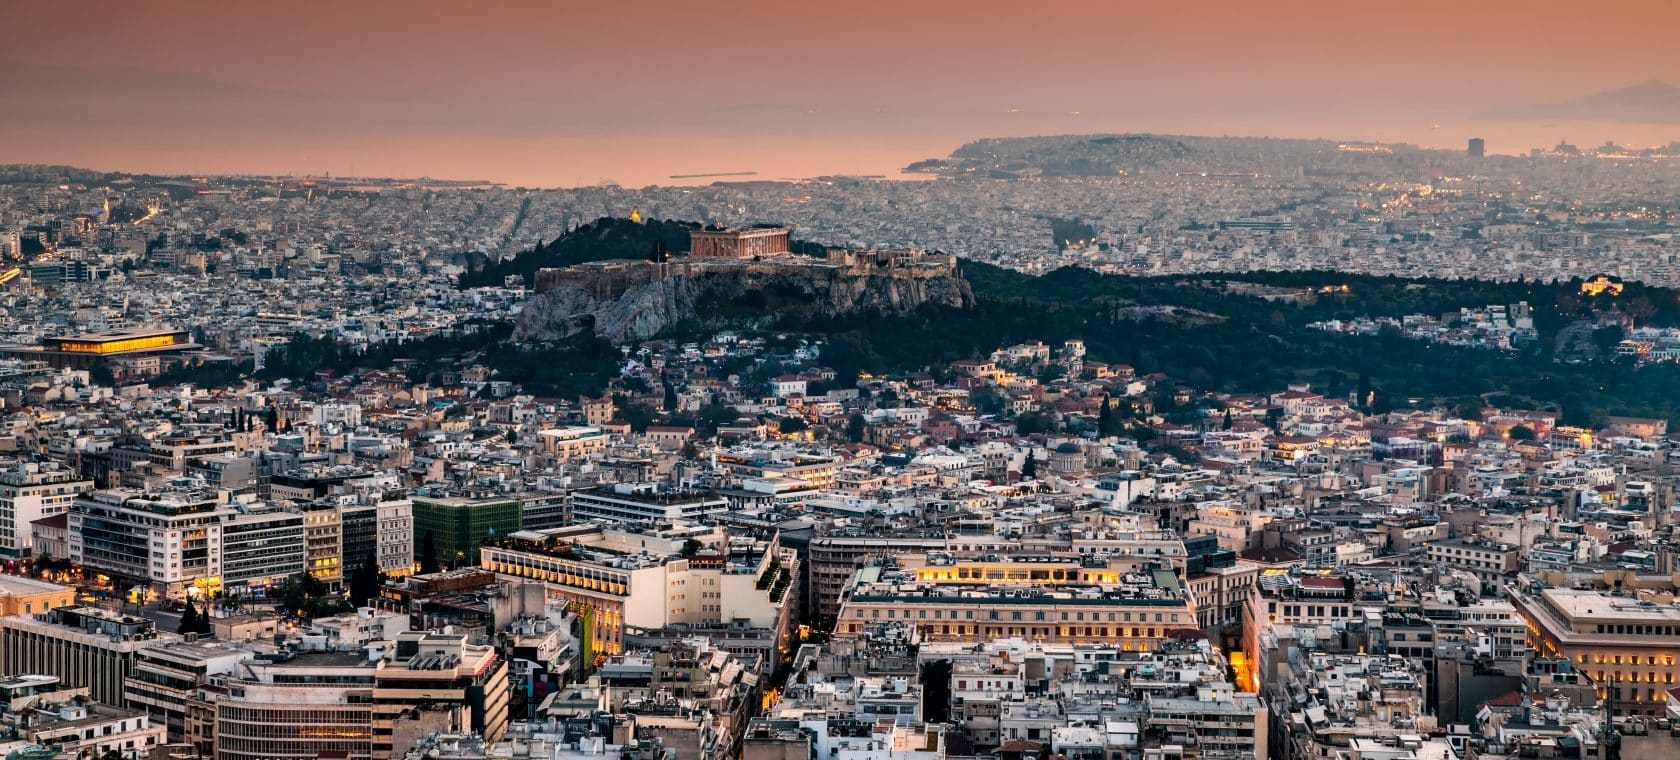 Athene is de hoofdstad van Griekenland